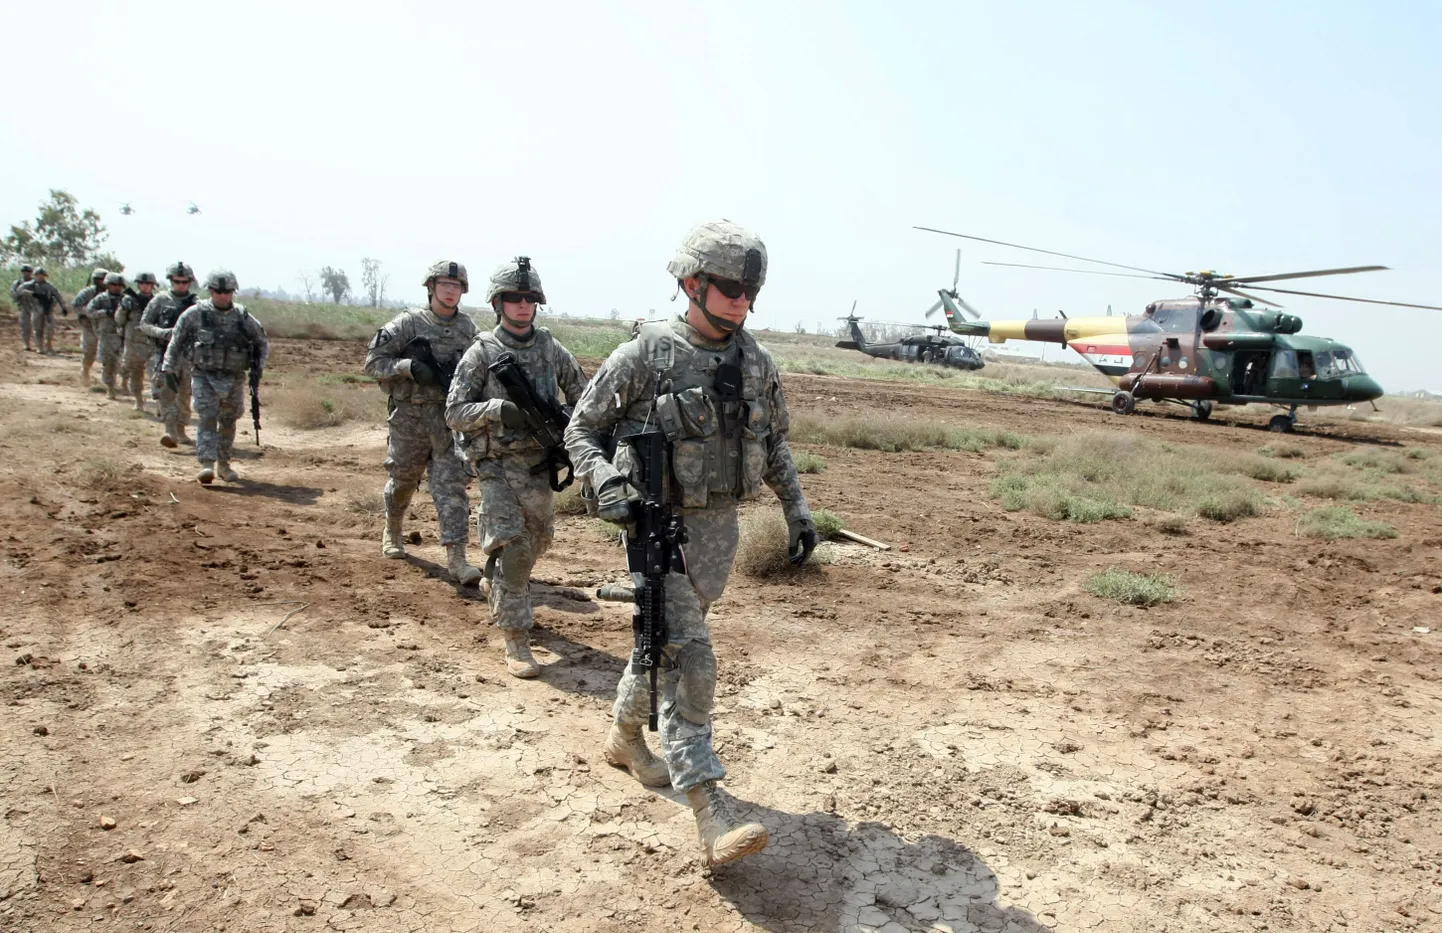 Американские солдаты в Ираке помогают местным правоохранительным органам расследовать случившееся.